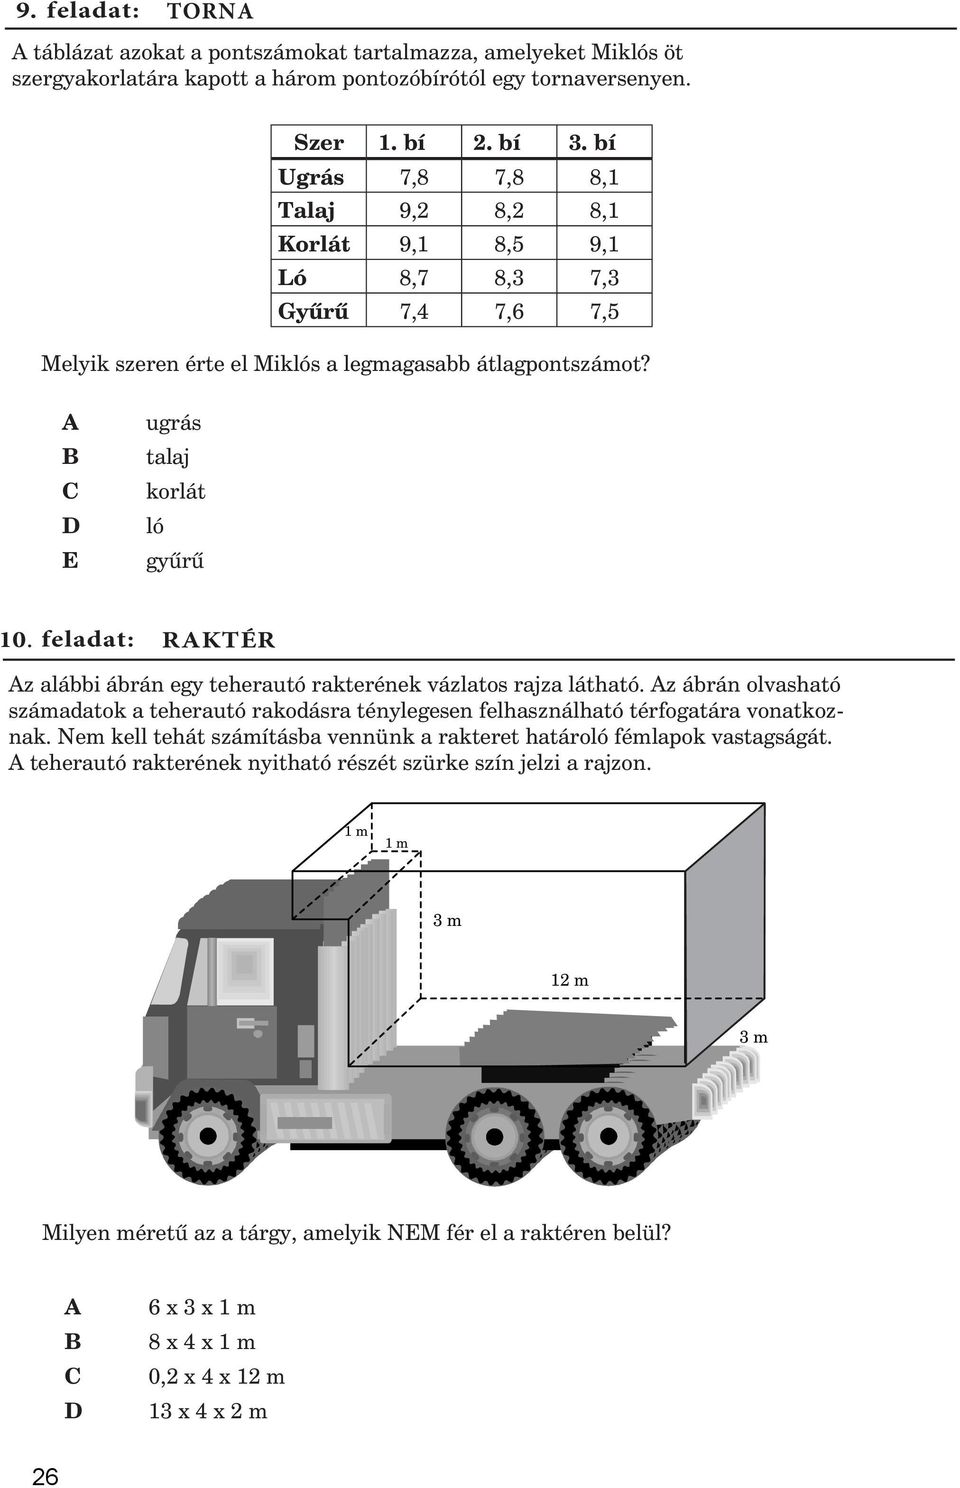 feladat: RKTÉR z alábbi ábrán egy teherautó rakterének vázlatos rajza látható. z ábrán olvasható számadatok a teherautó rakodásra ténylegesen felhasználható térfogatára vonatkoznak.